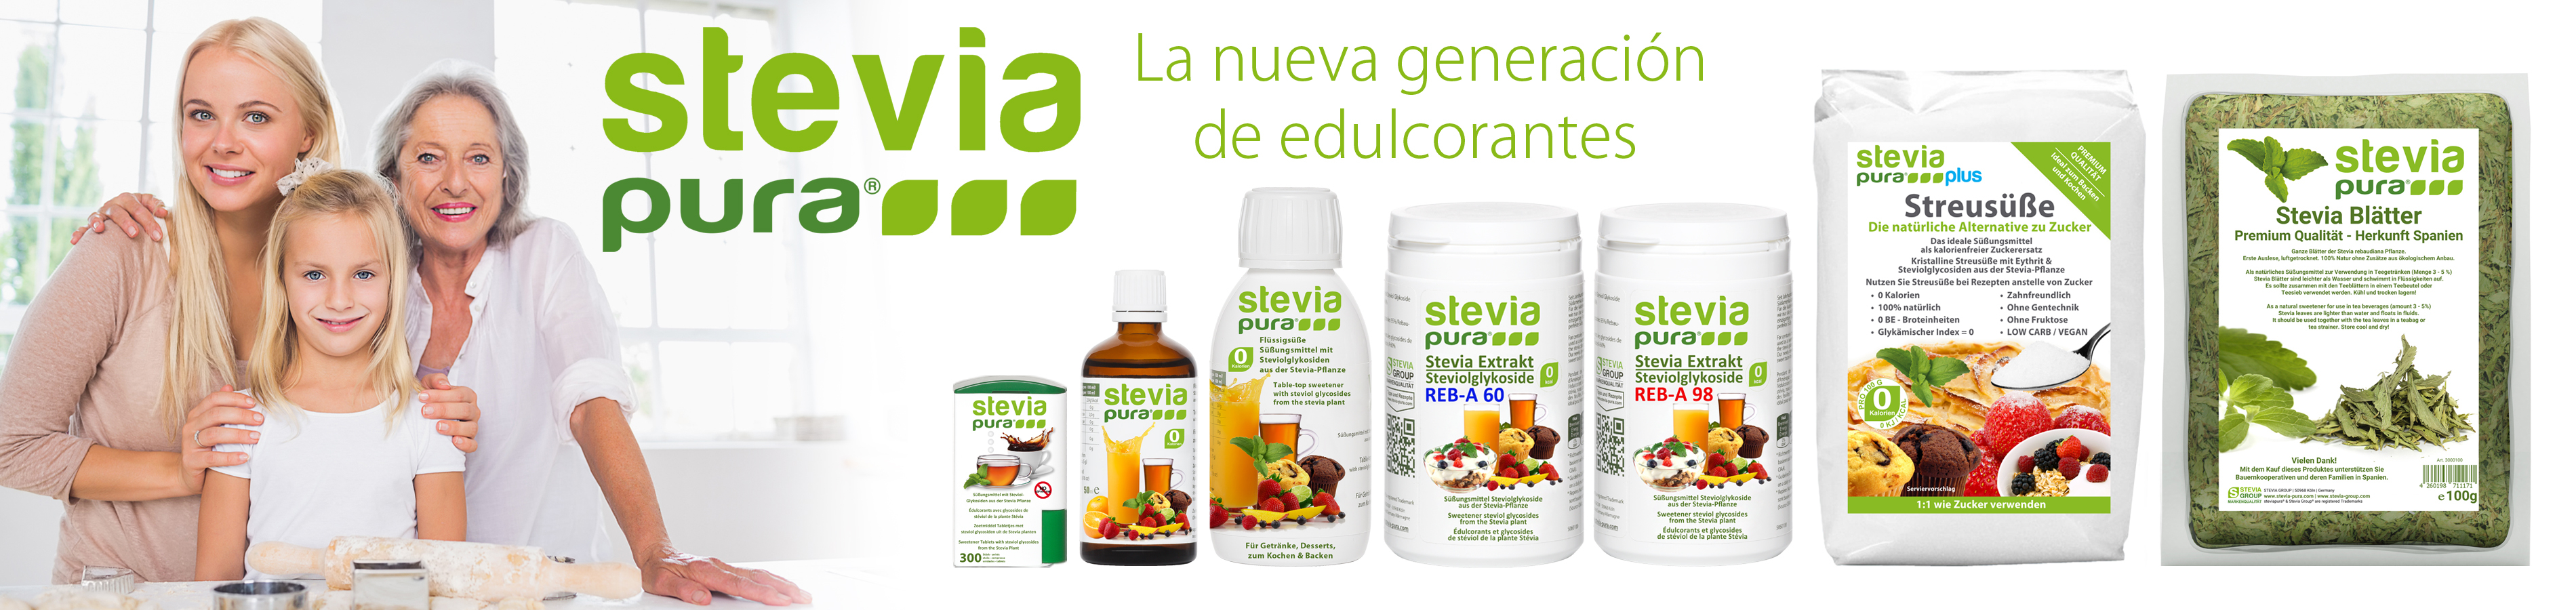 Stevia Group - La nueva generación de edulcorantes:...